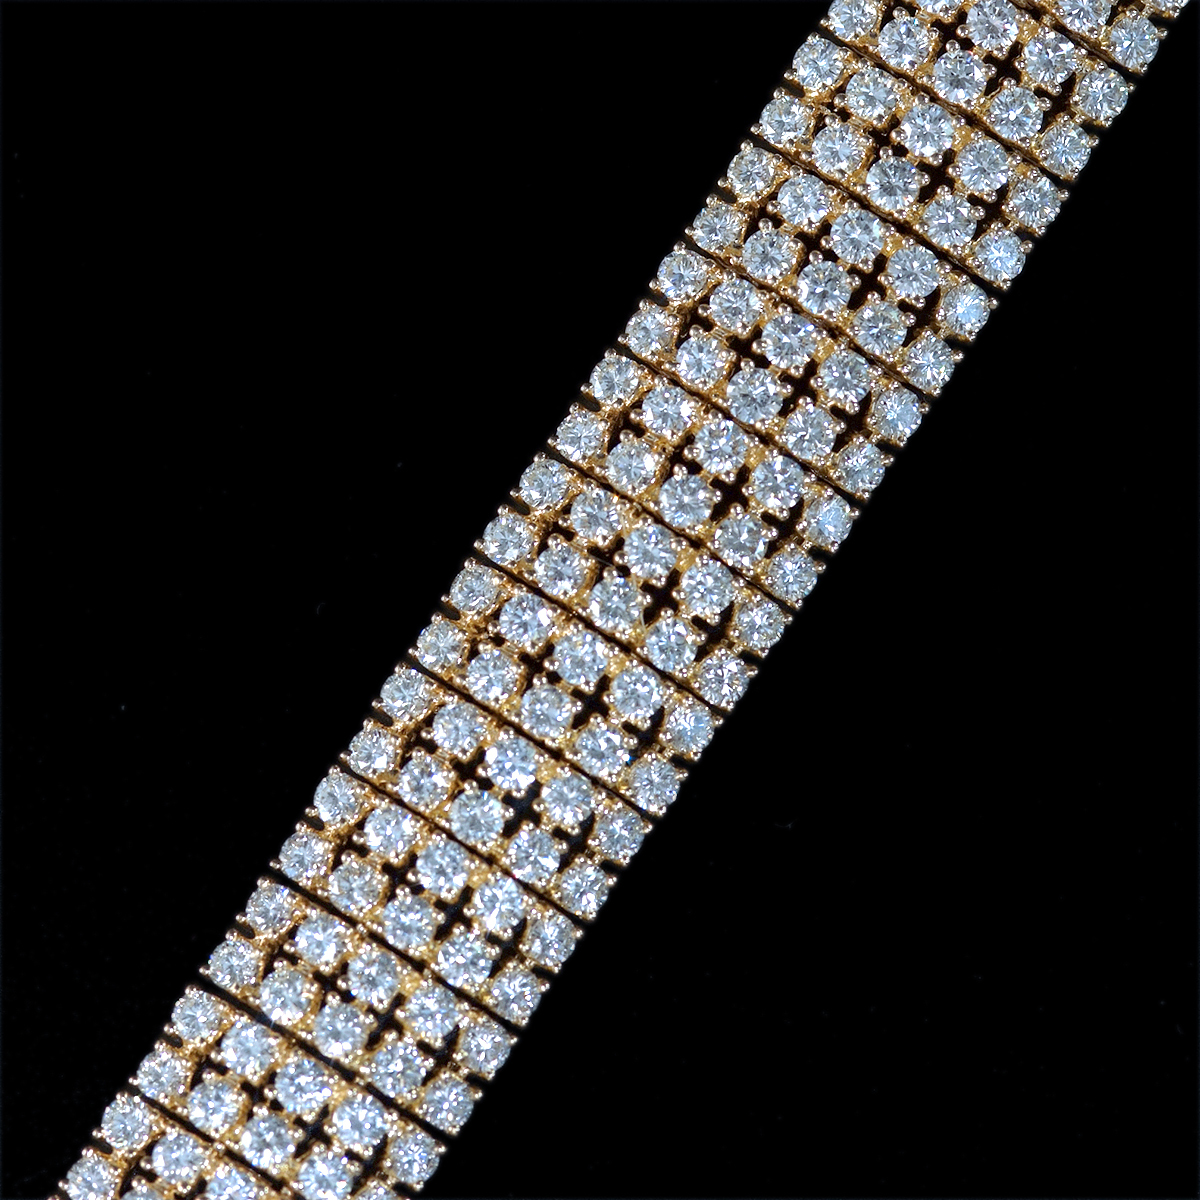 F2279【Tiffany&Co. 1837】ヤフオクでは日本一豪華なティファニーブレス 天然大粒絶品D330pcs 最高級18金無垢セレブリティブレスレット